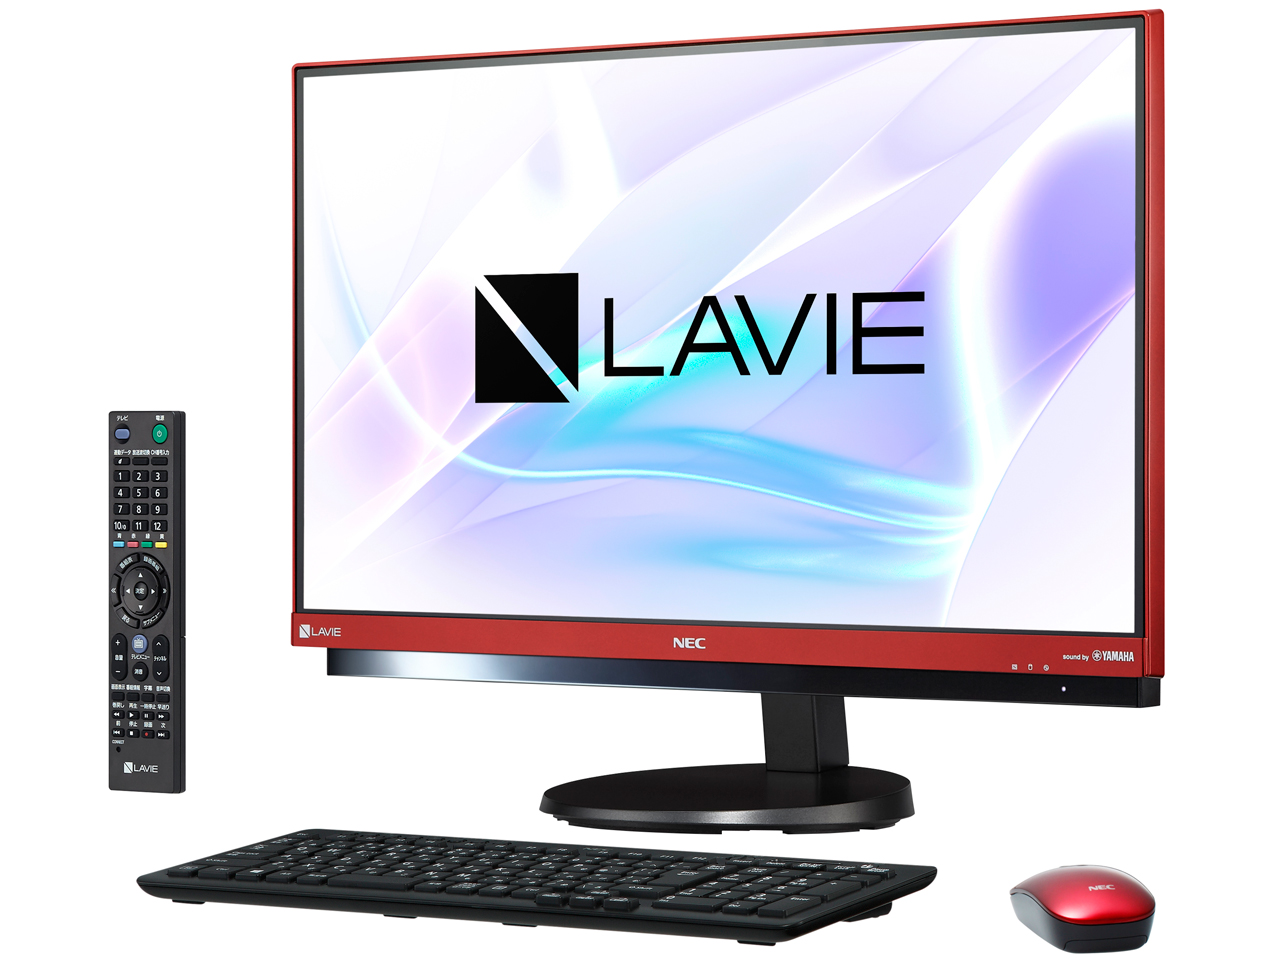 NEC LAVIE Desk All-in-one DA770/HAR PC-DA770HAR-E3 取扱説明書